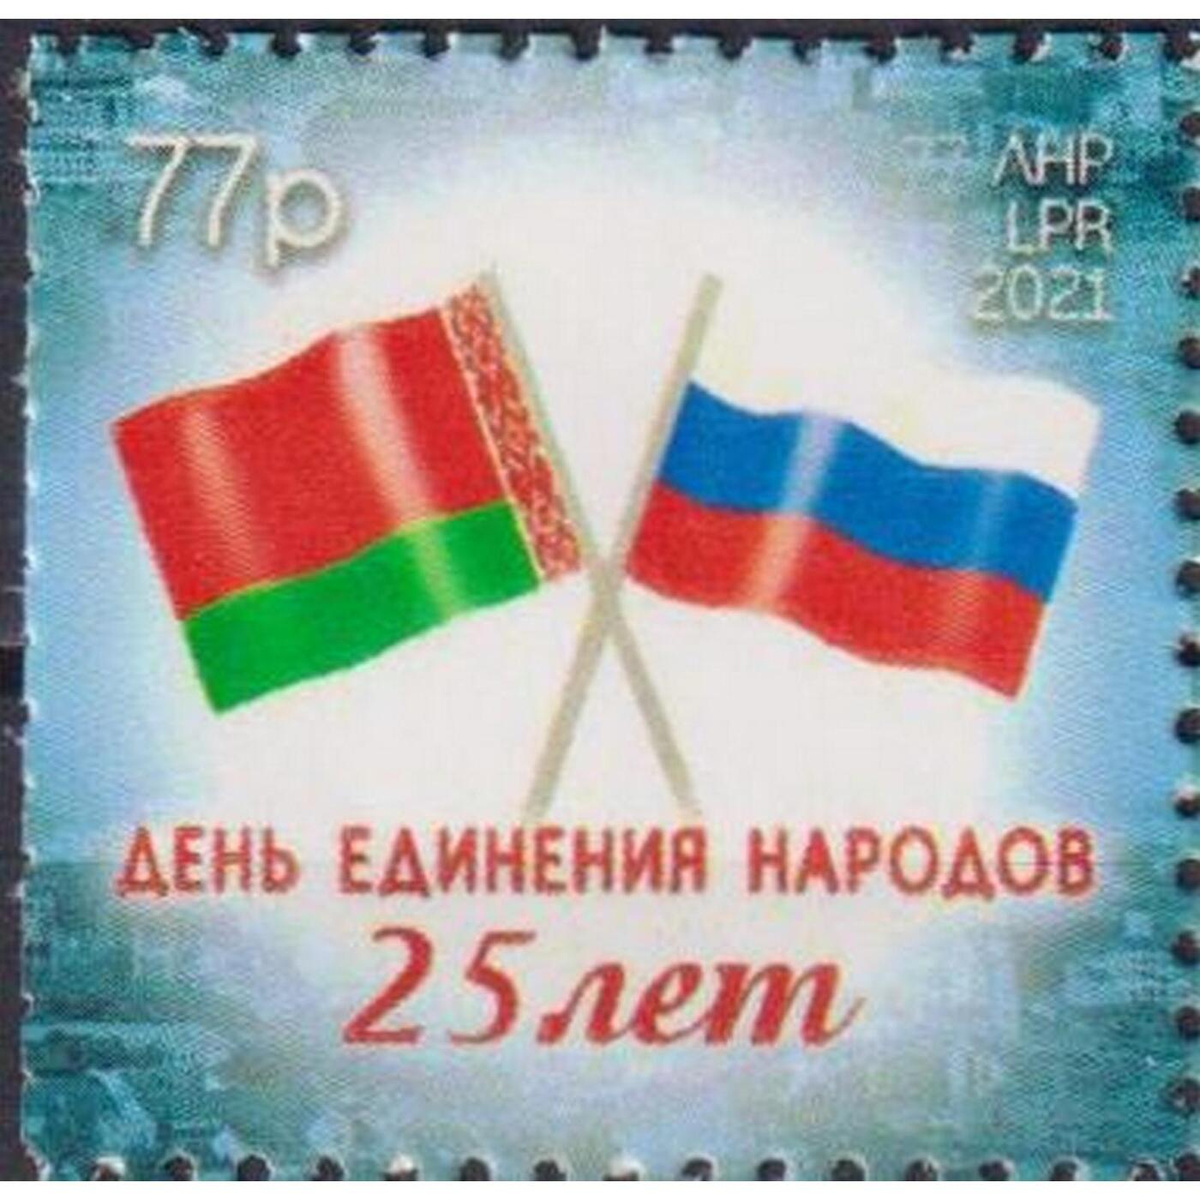 День единения народов беларуси и россии поздравление